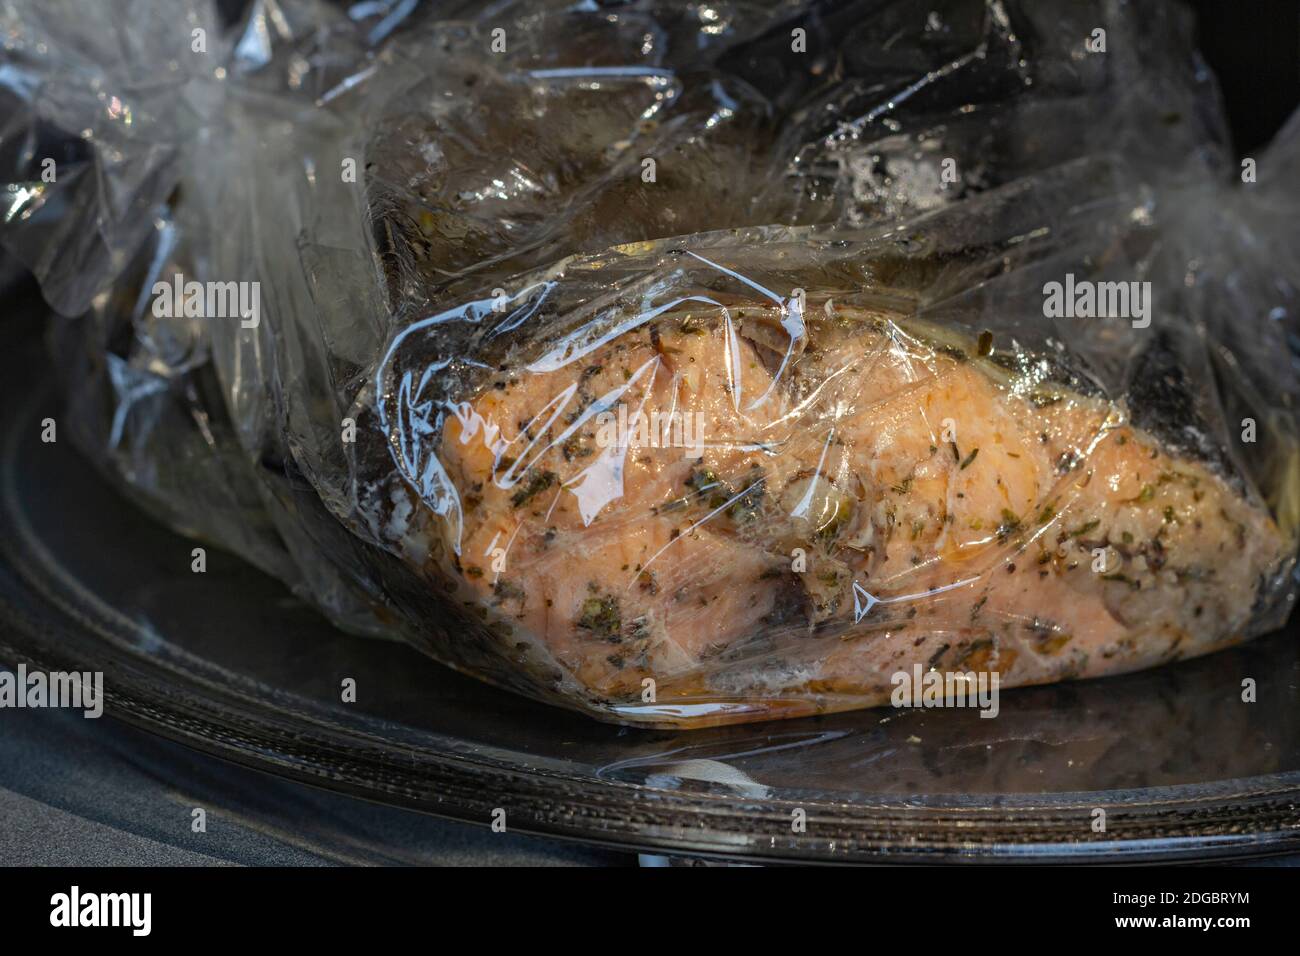 Pescado fresco especiado de truchas envuelto en una funda de horno en un horno de microvawe, cocido, Vista de primer plano Foto de stock